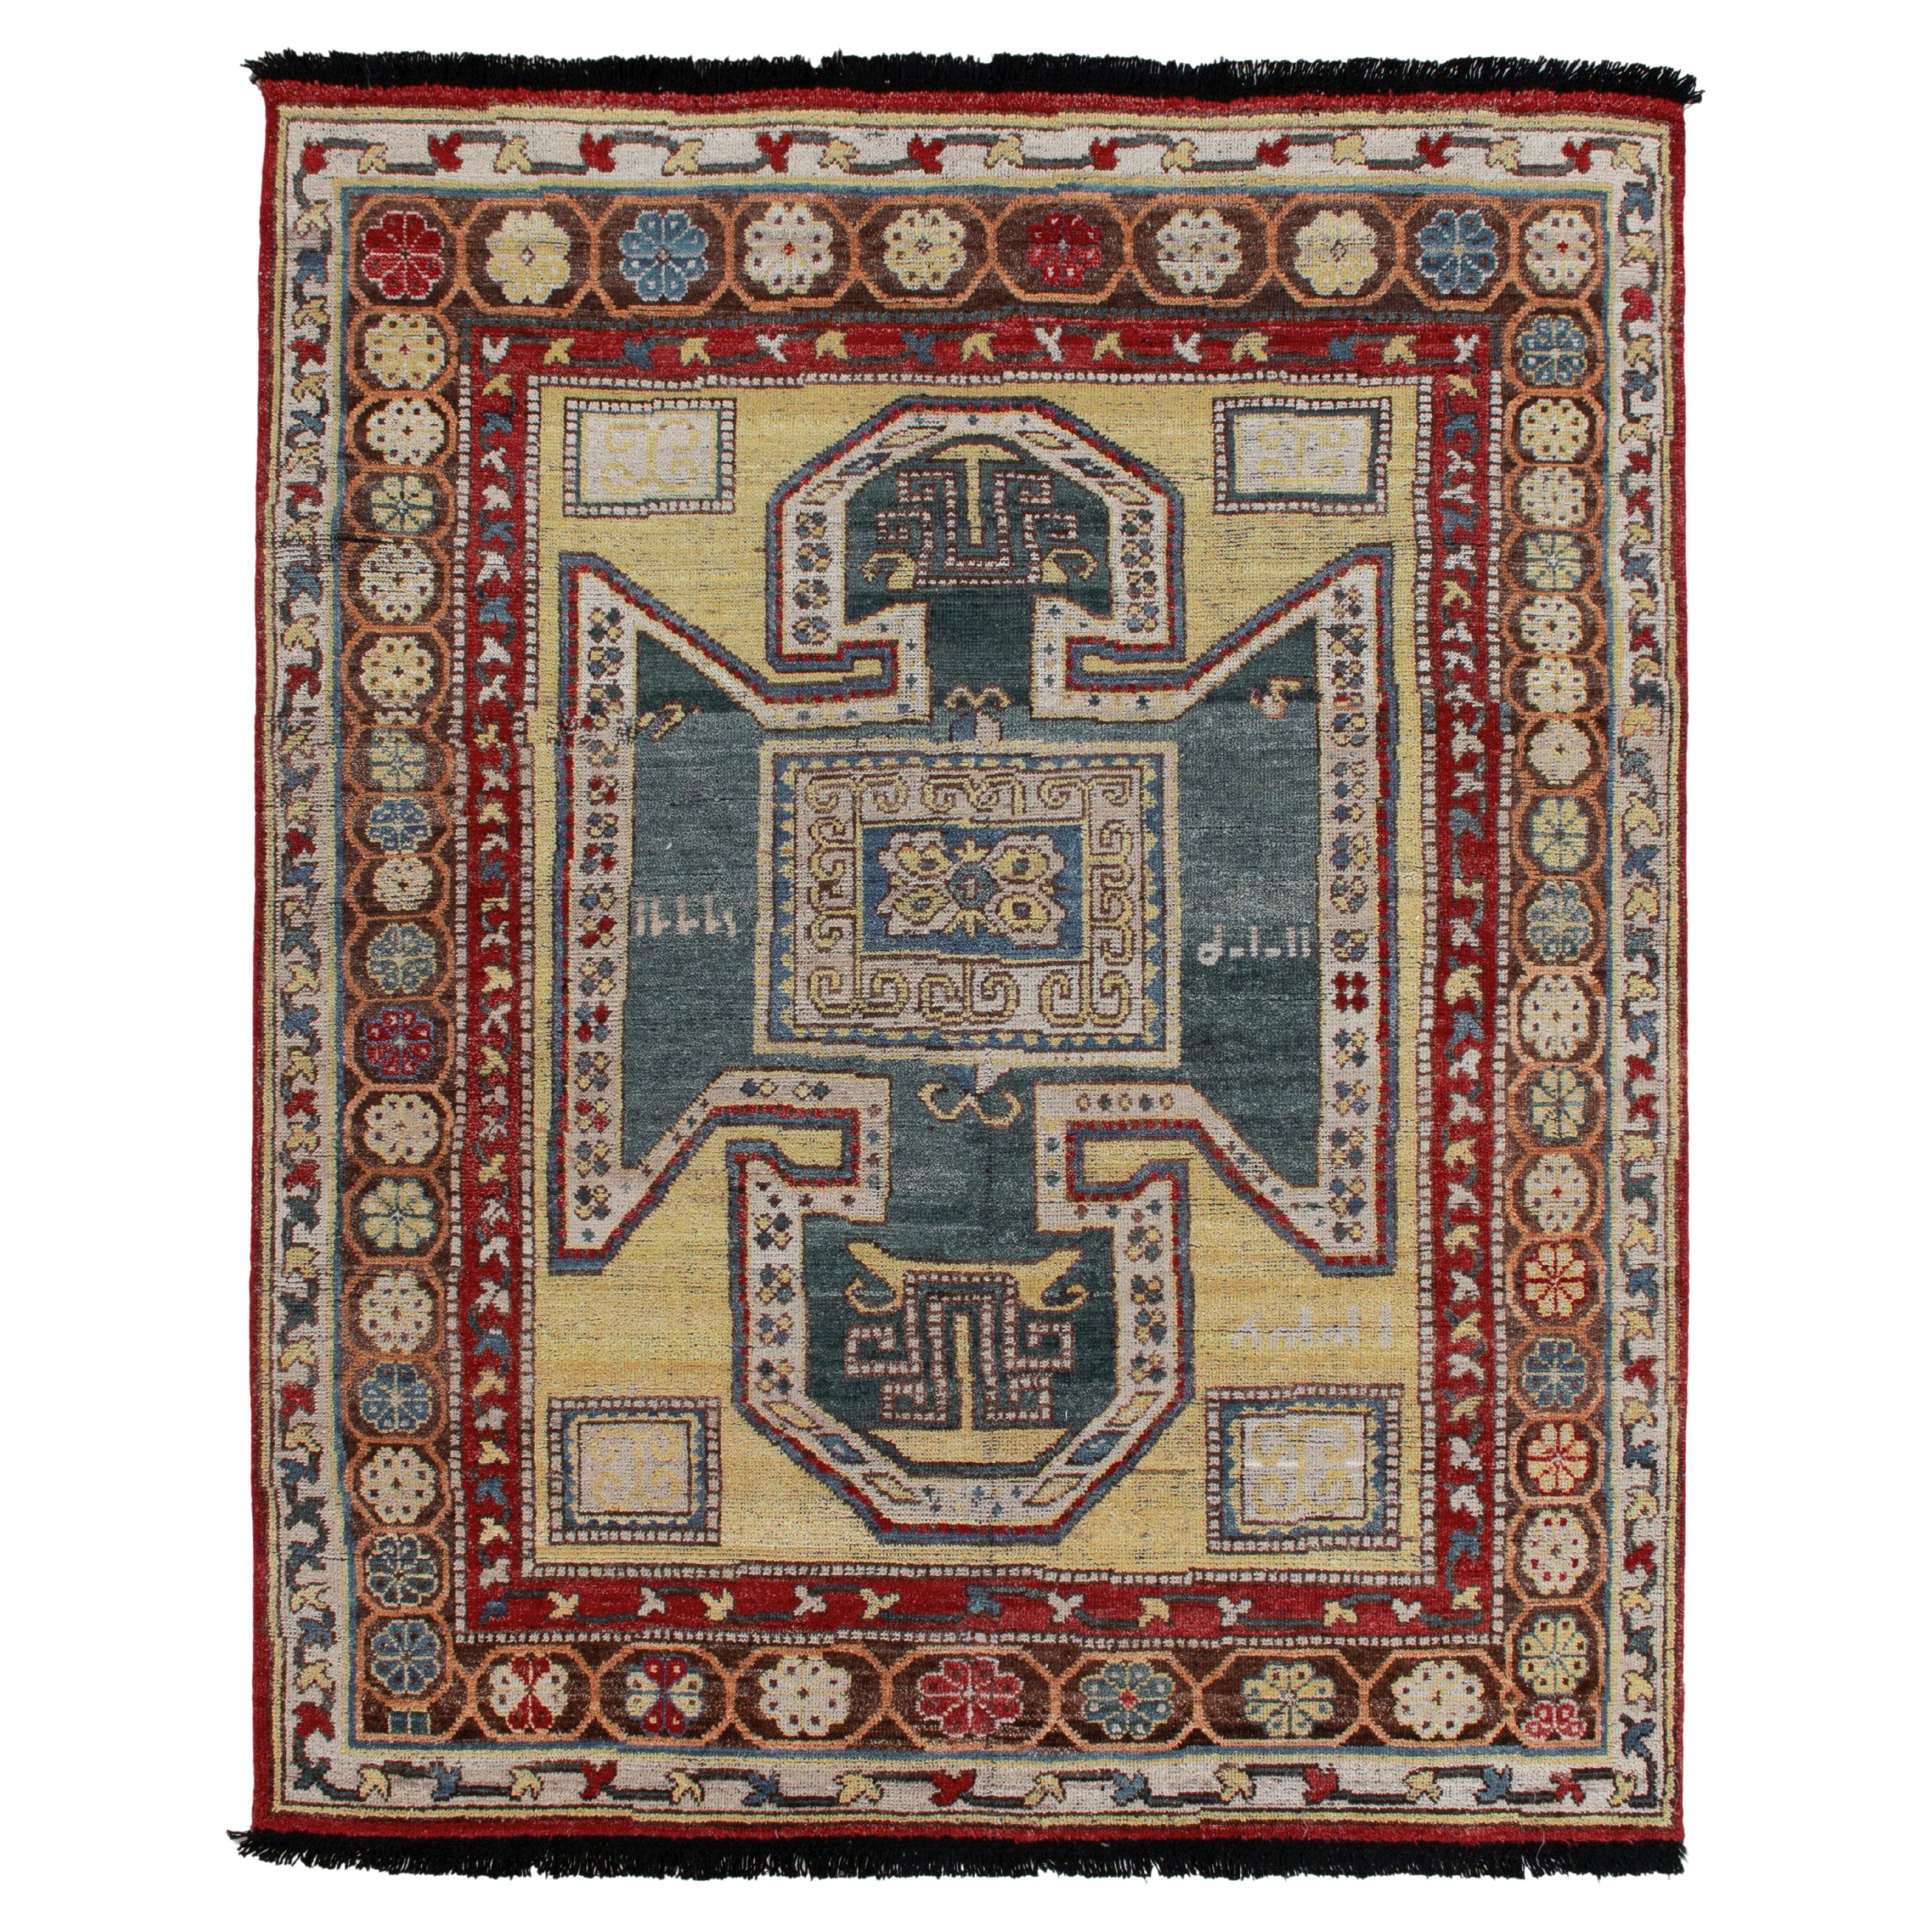 Teppich im Stammes- und Kelim-Stil mit geometrischem Muster in Blau, Rot, Beige und Braun